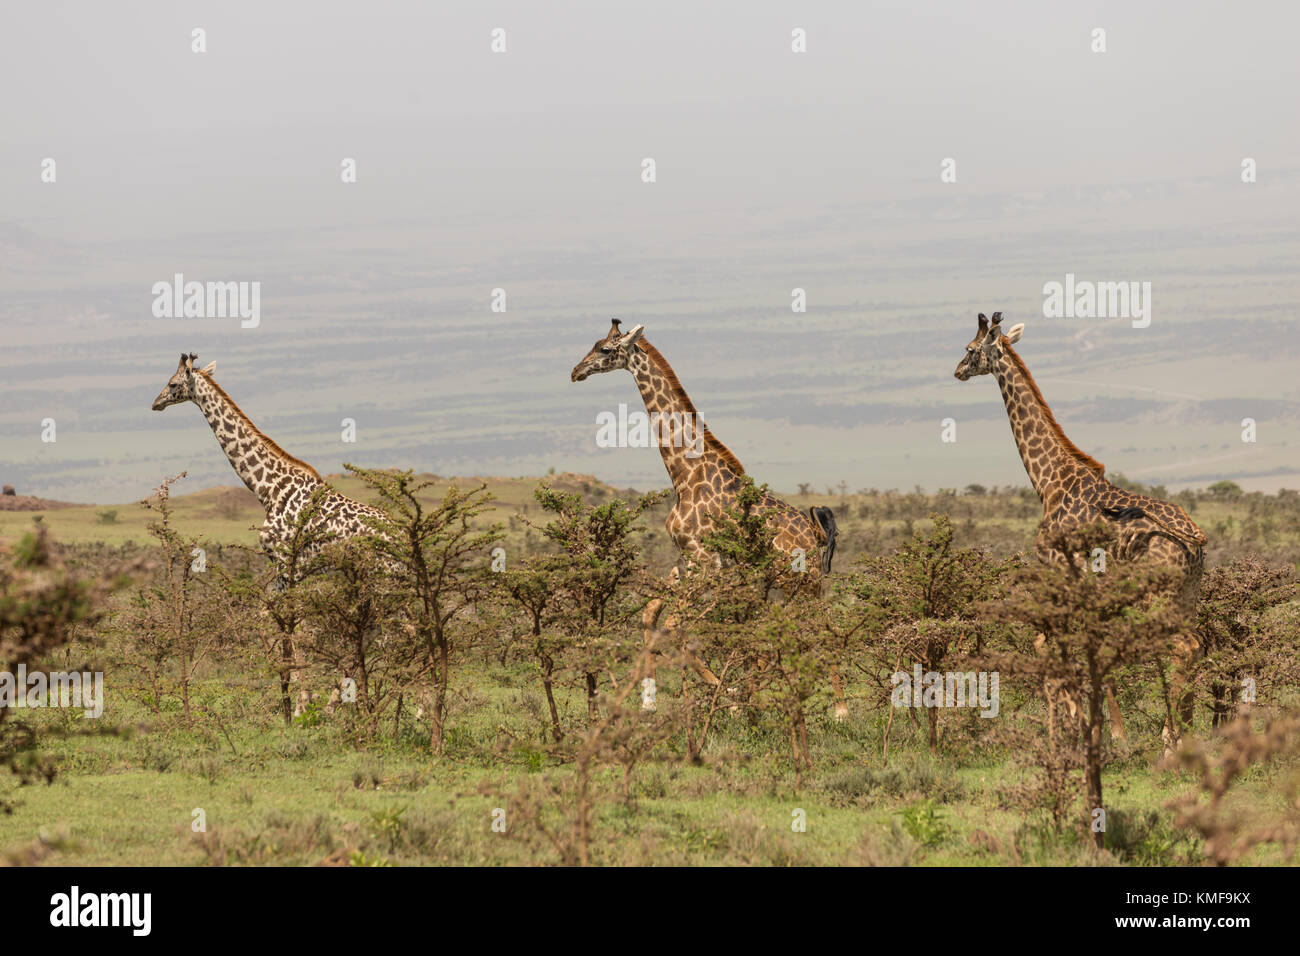 Wild giraffes in Serengeti national park, Tanzania Stock Photo